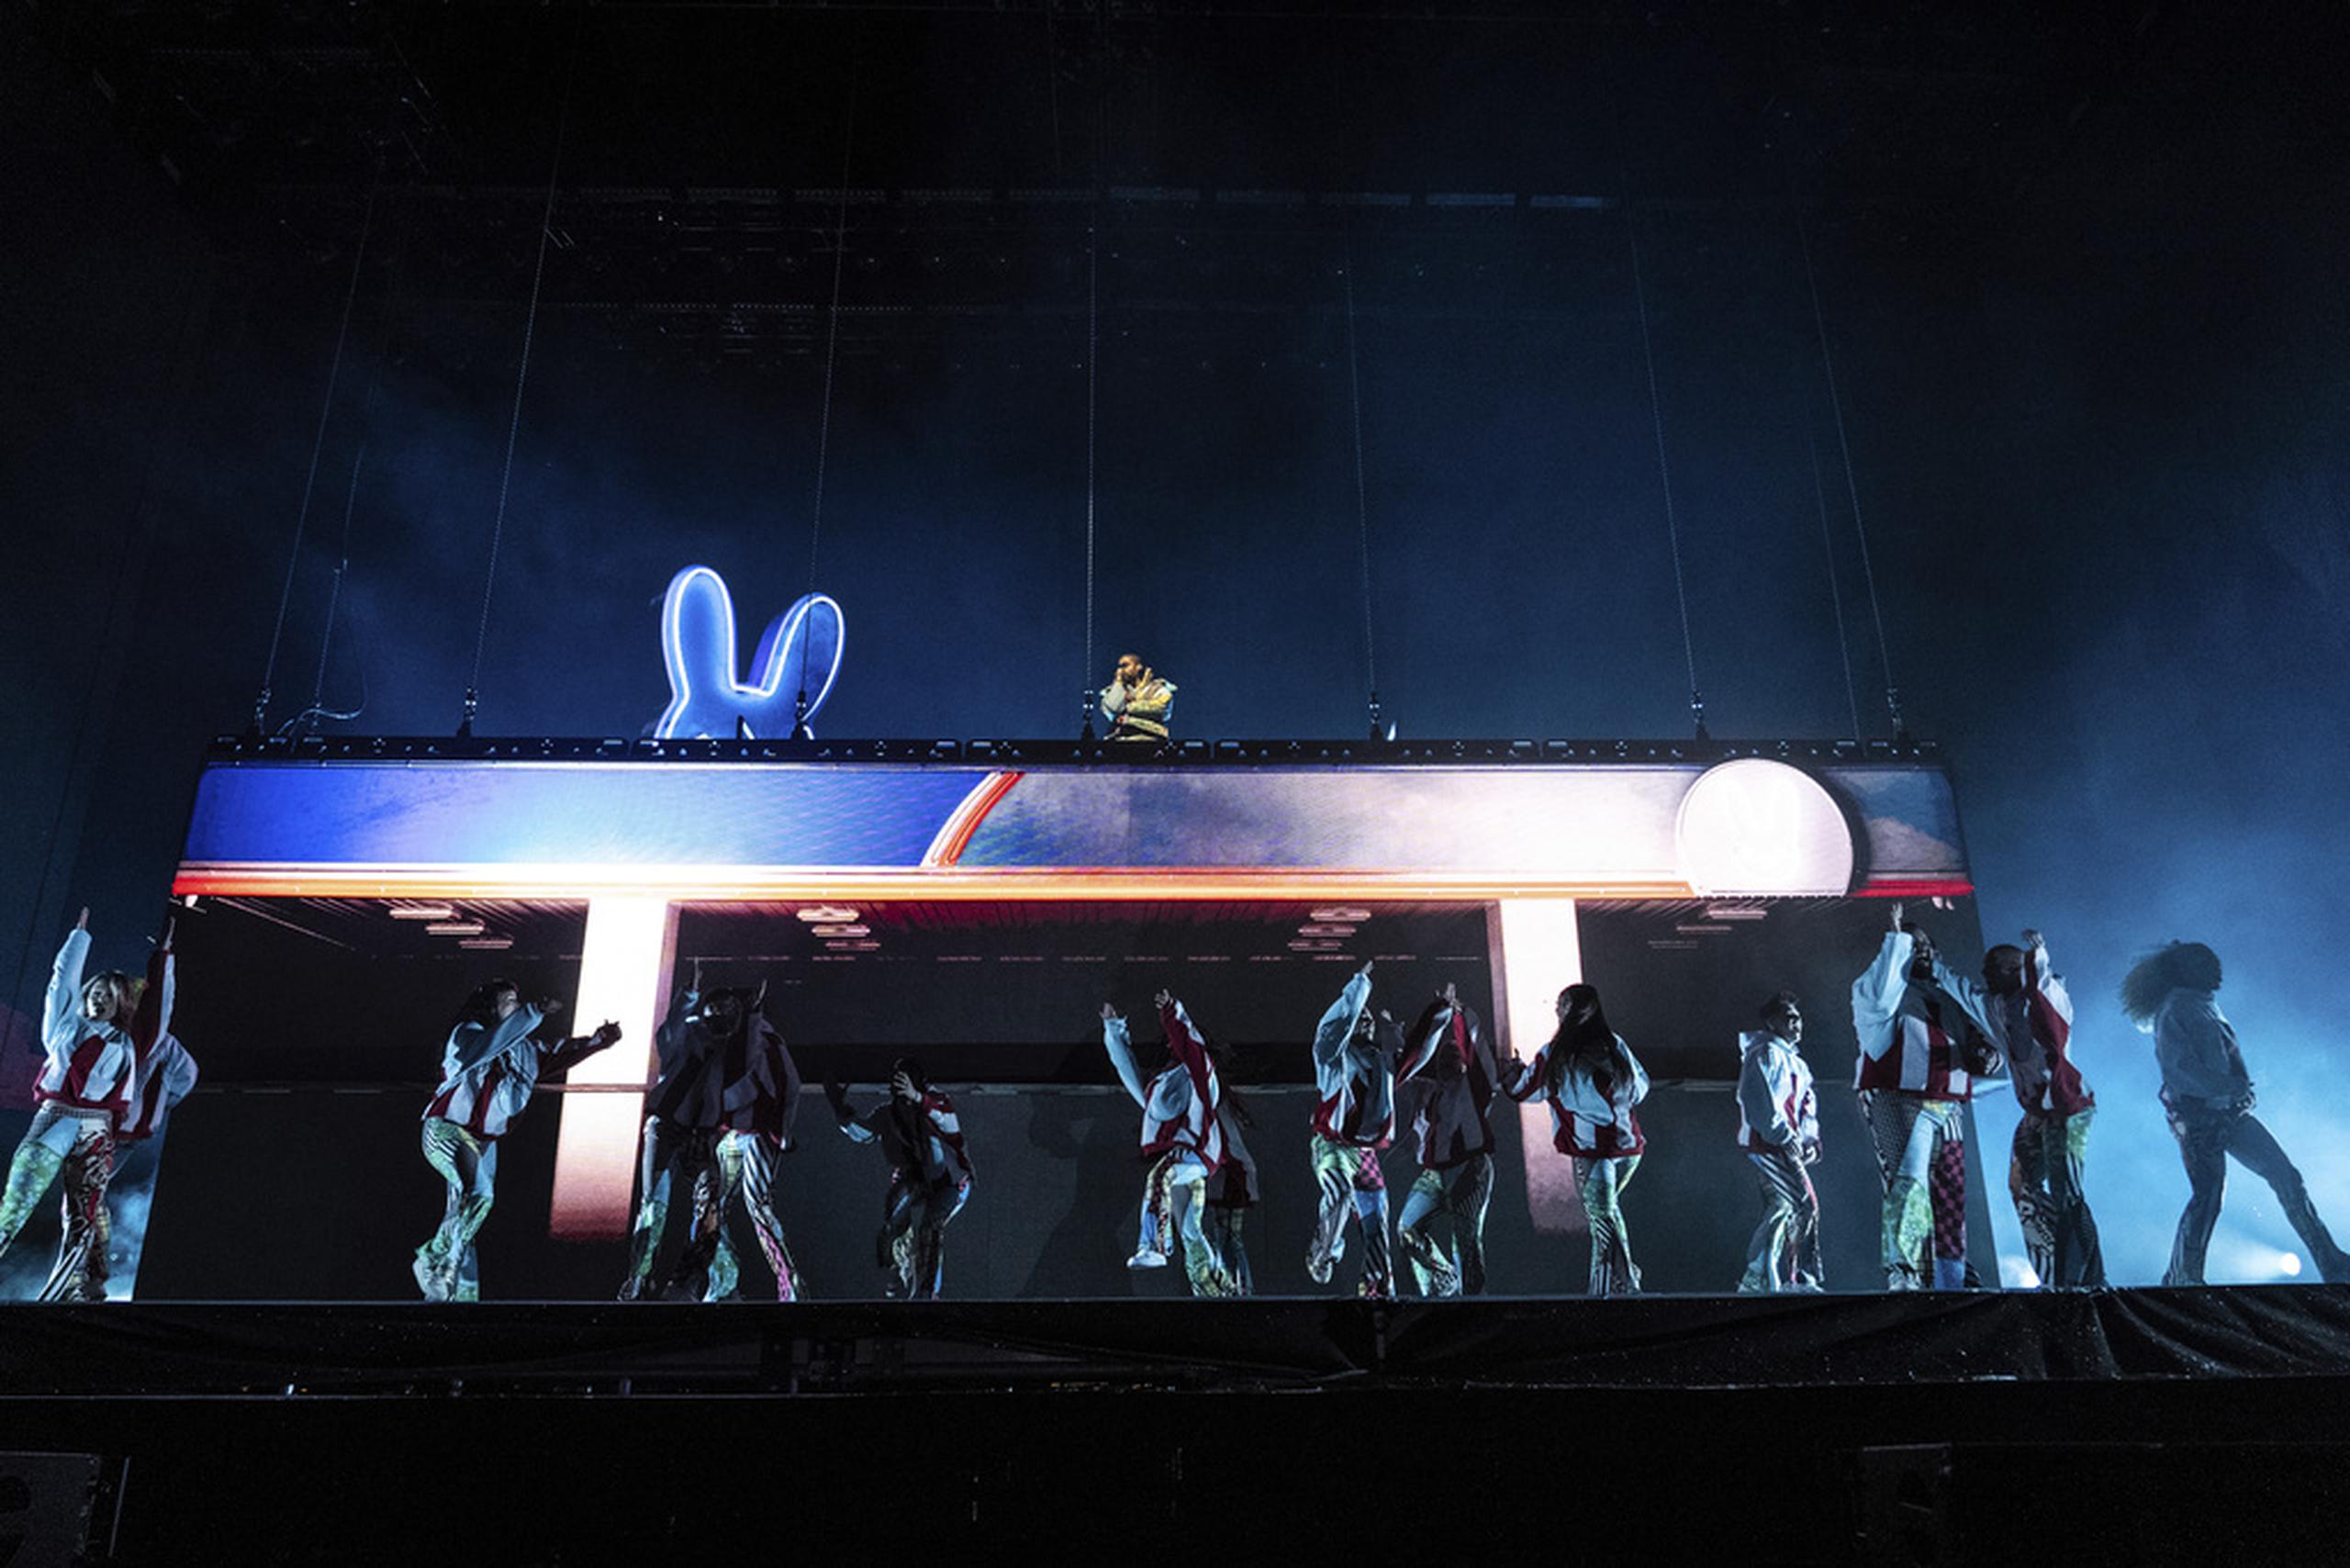 En Coachella, artistas de renombre se presentan en tarima y, también, disfrutan del evento. En la edición del 2023, Bad Bunny fue uno de los artistas invitados para amenizar el evento. (Photo by Amy Harris/Invision/AP)